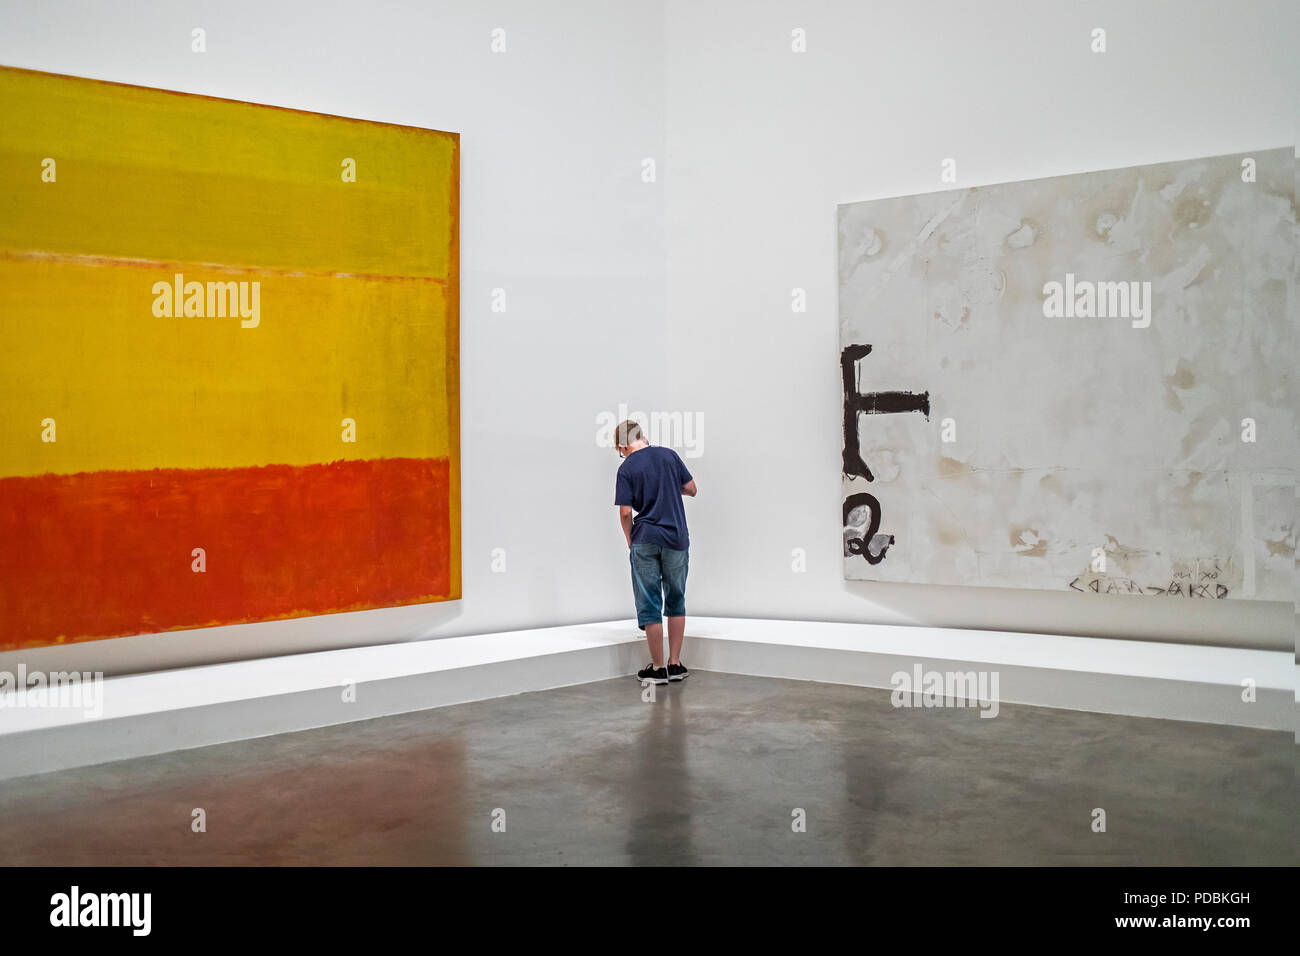 A la izquierda Untitled por Mark Rothko. A la derecha de "Ambrosia" por Antoni Tapies, colección de museo, Museo Guggenheim, Bilbao, España Foto de stock